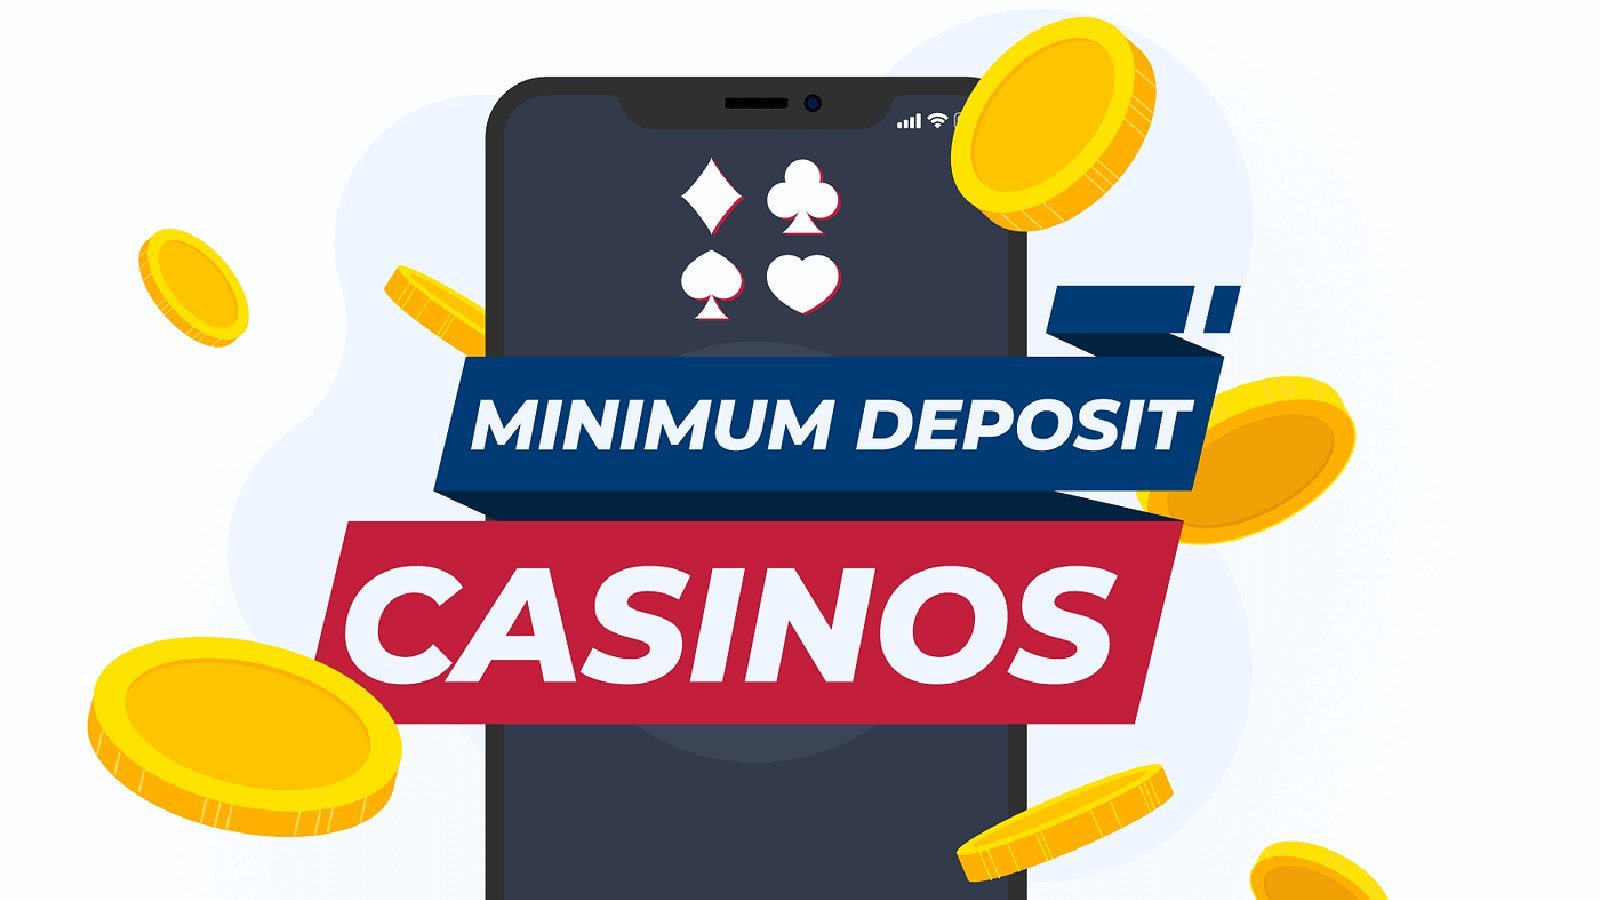 €1 Minimum Deposit Casinos